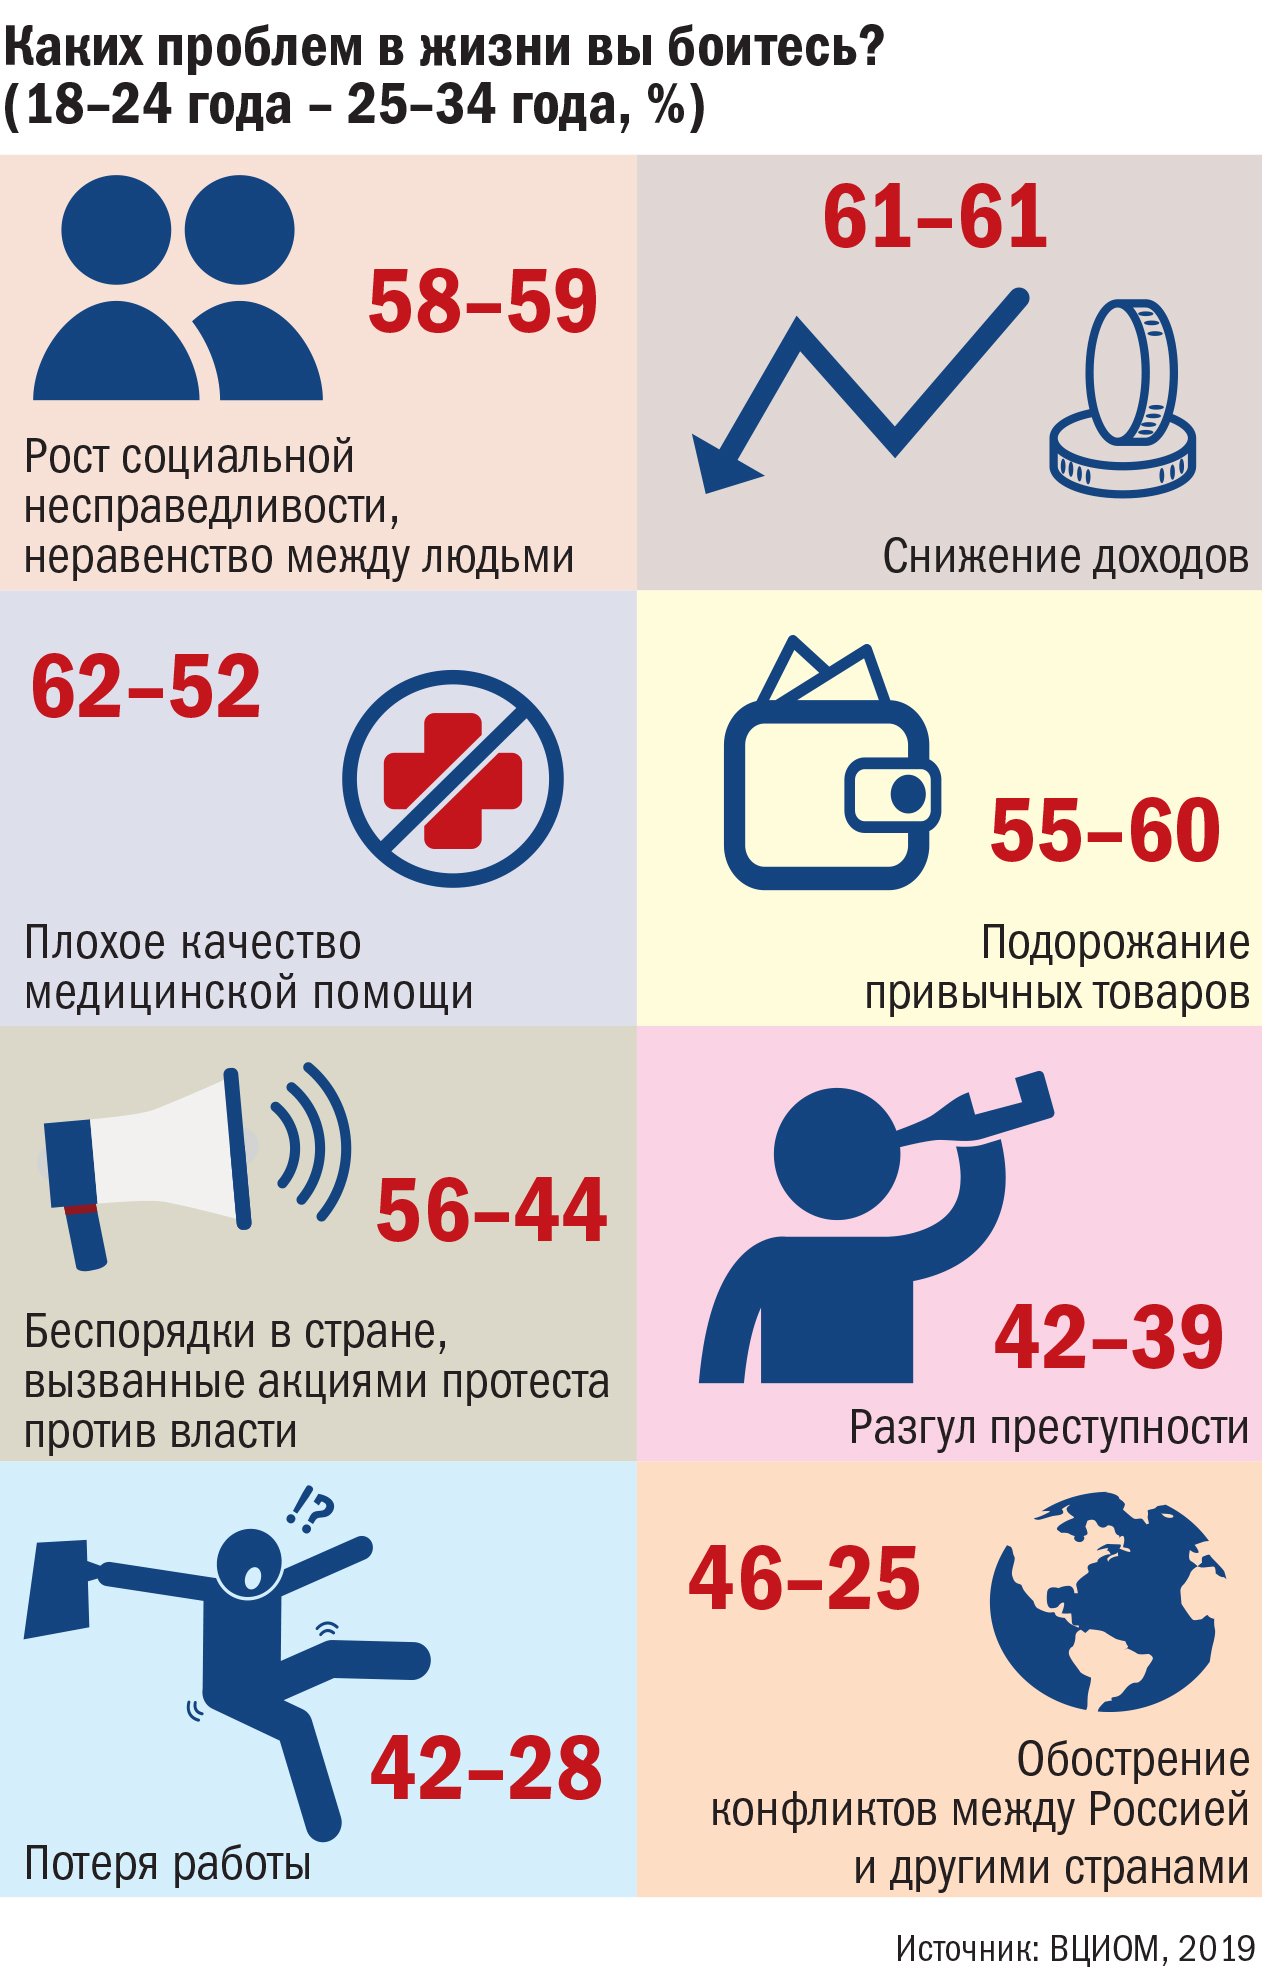 Повышение возраста молодежи. Молодежь Возраст. Молодежь по возрасту. Возраст молодежи в России по закону.